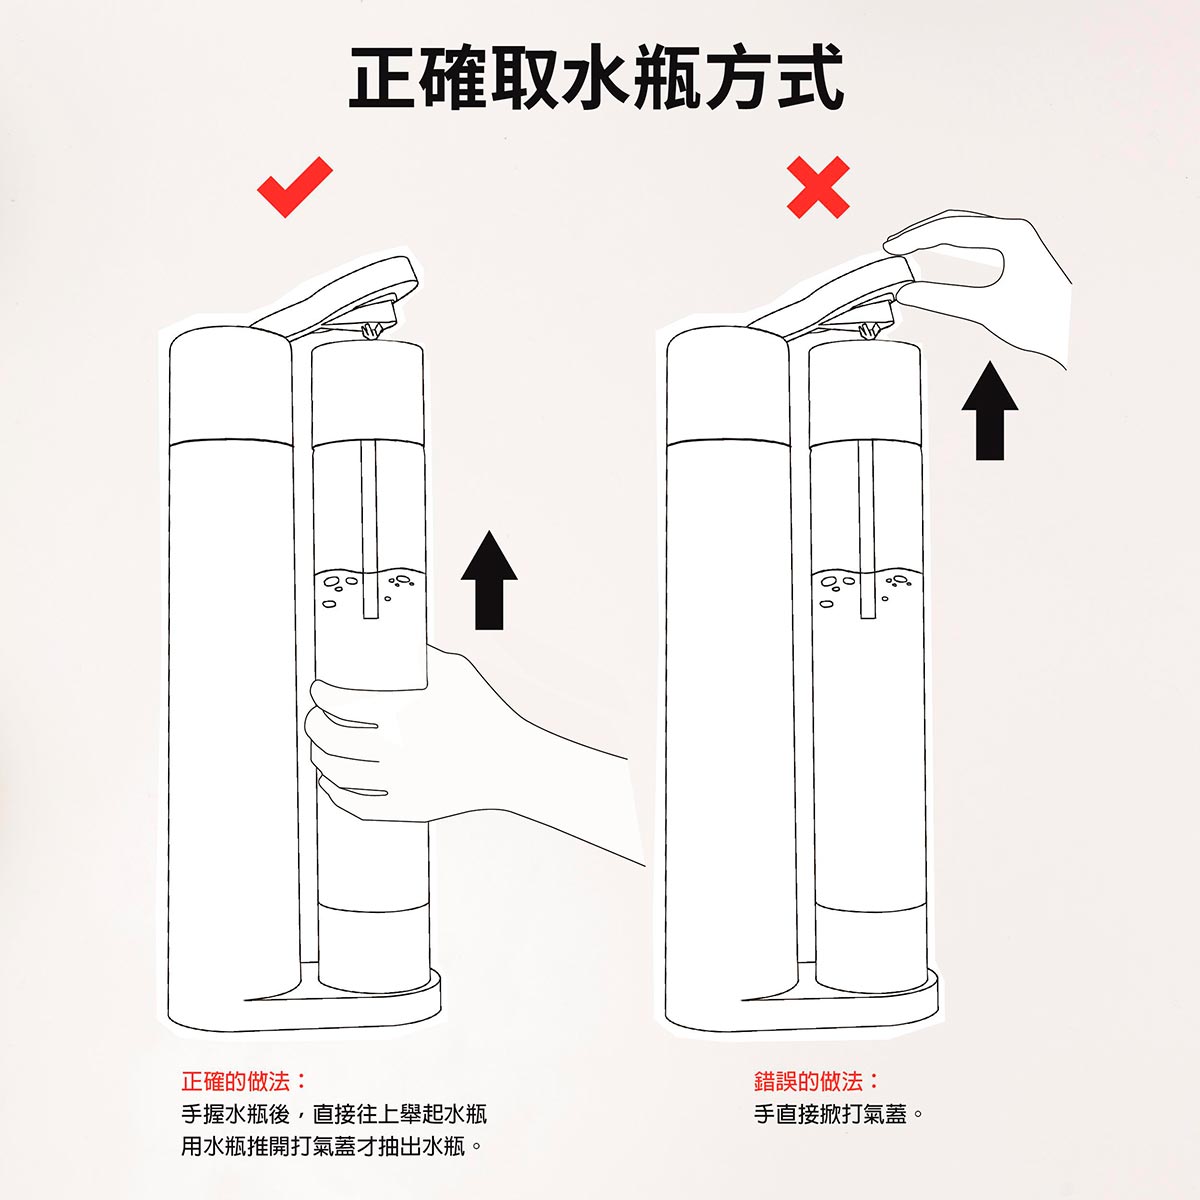 Levivo Shang 氣泡水機的正確取水瓶方式說明，手握水瓶後，直接往上舉起水瓶，用水瓶推開打氣蓋才抽出水瓶。